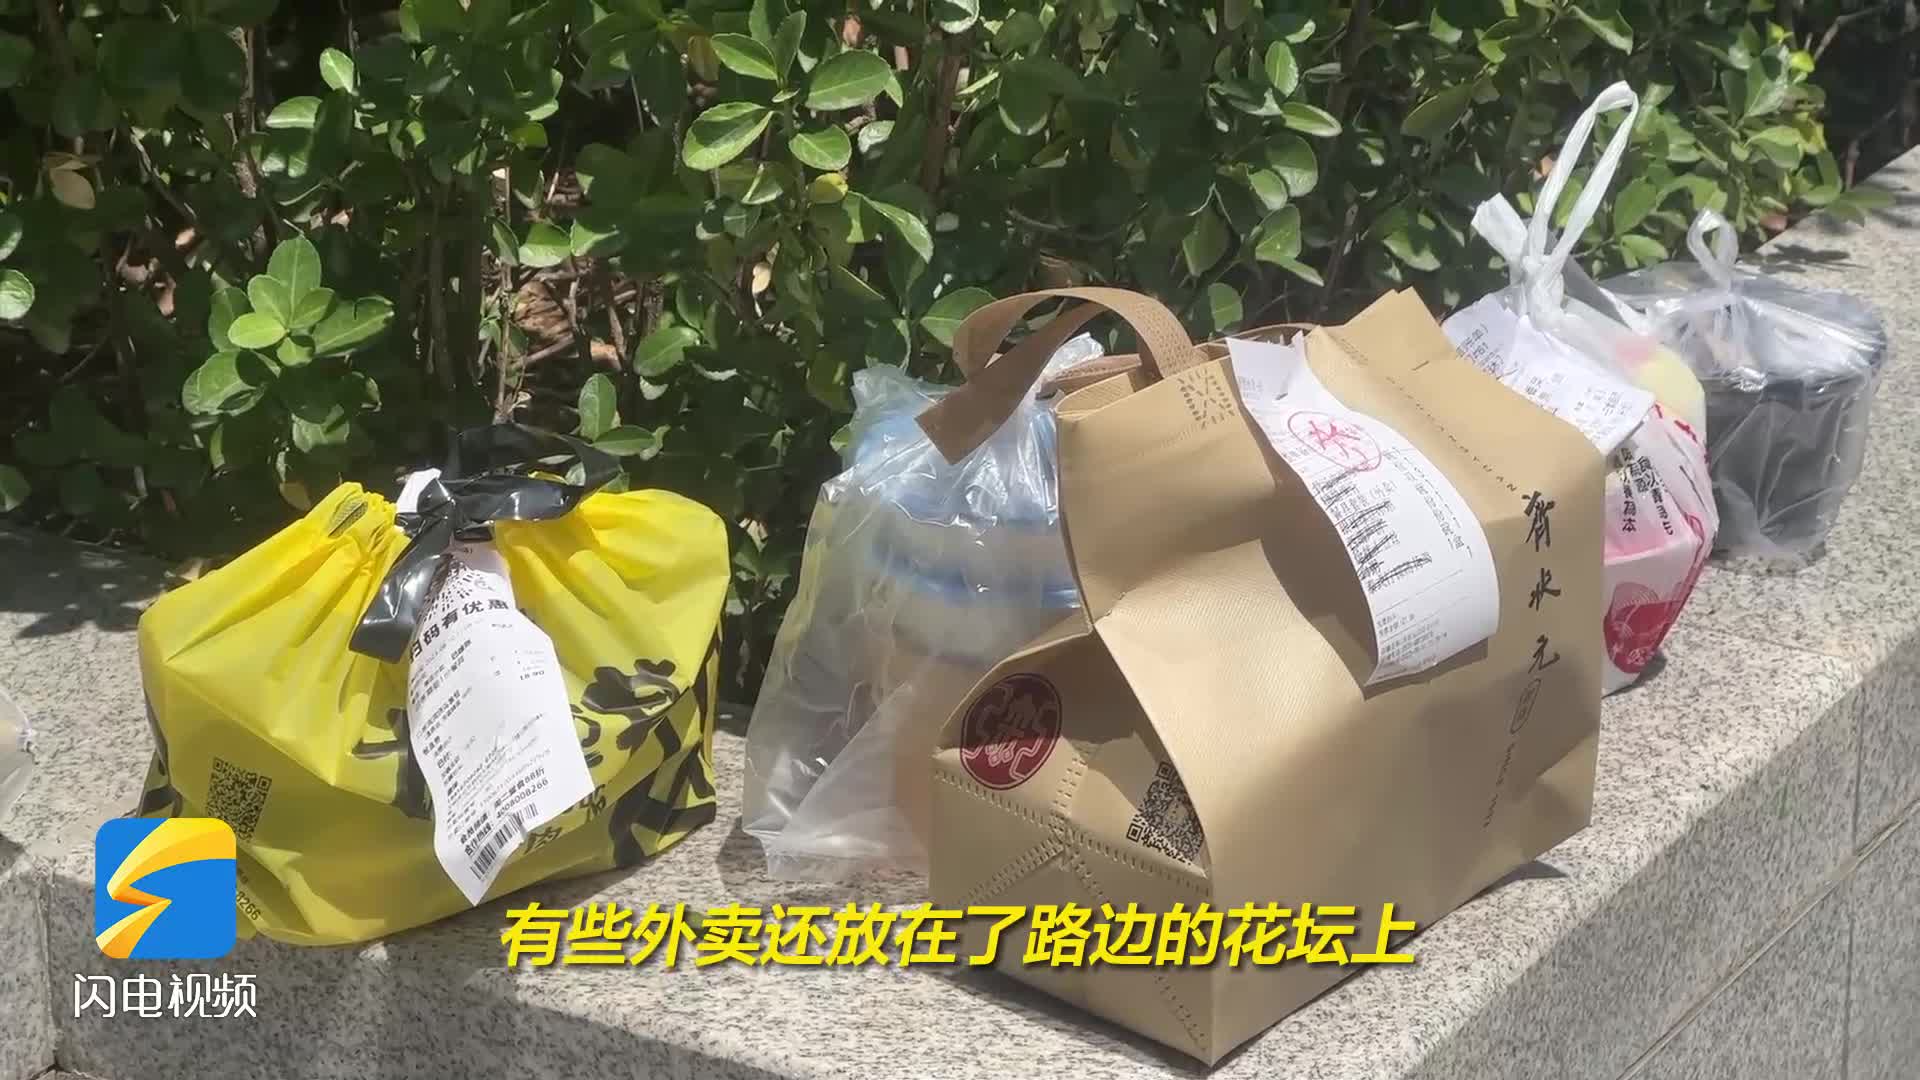 外卖塑料怎么“降”如何“解”？ 闪电新闻记者济南探访调查